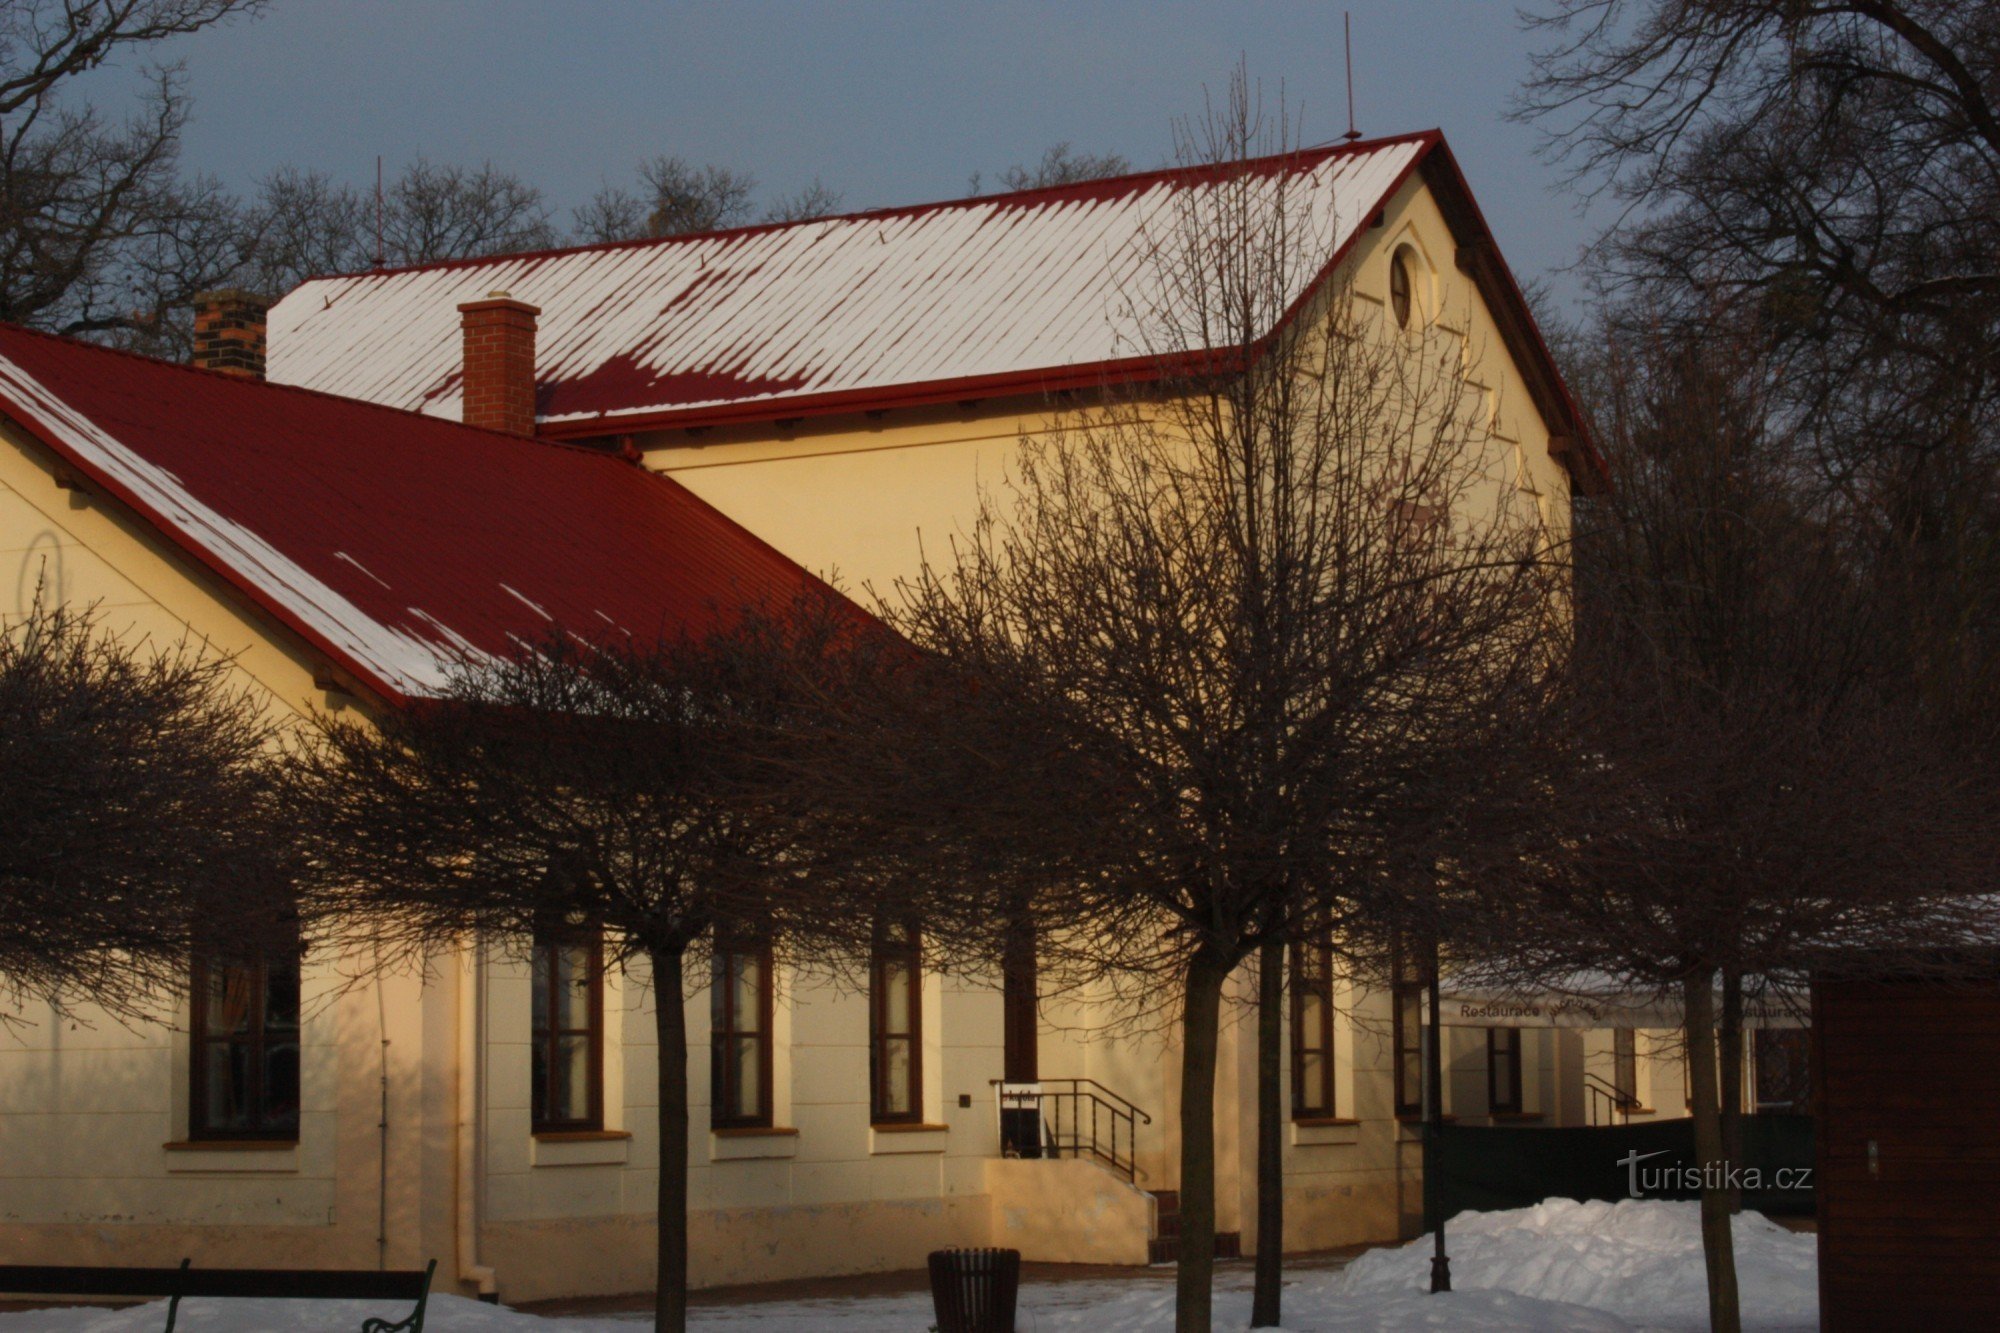 Hinter der Geschichte des Restaurants Michalov im gleichnamigen Park in Přerov